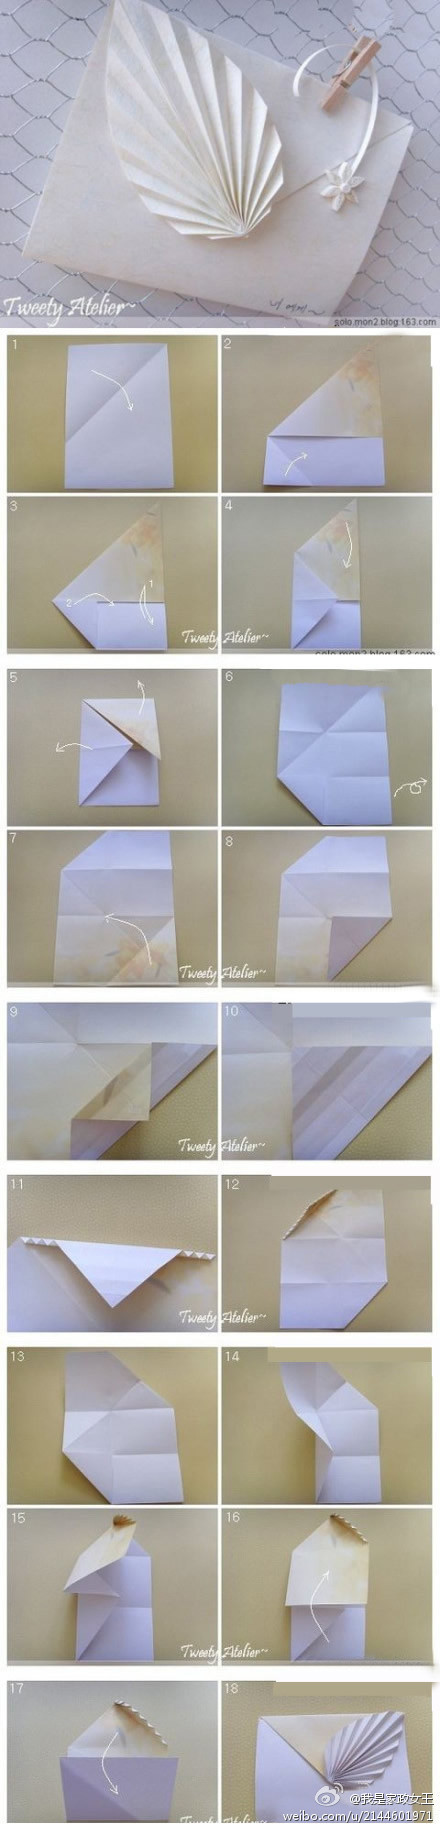 信折纸